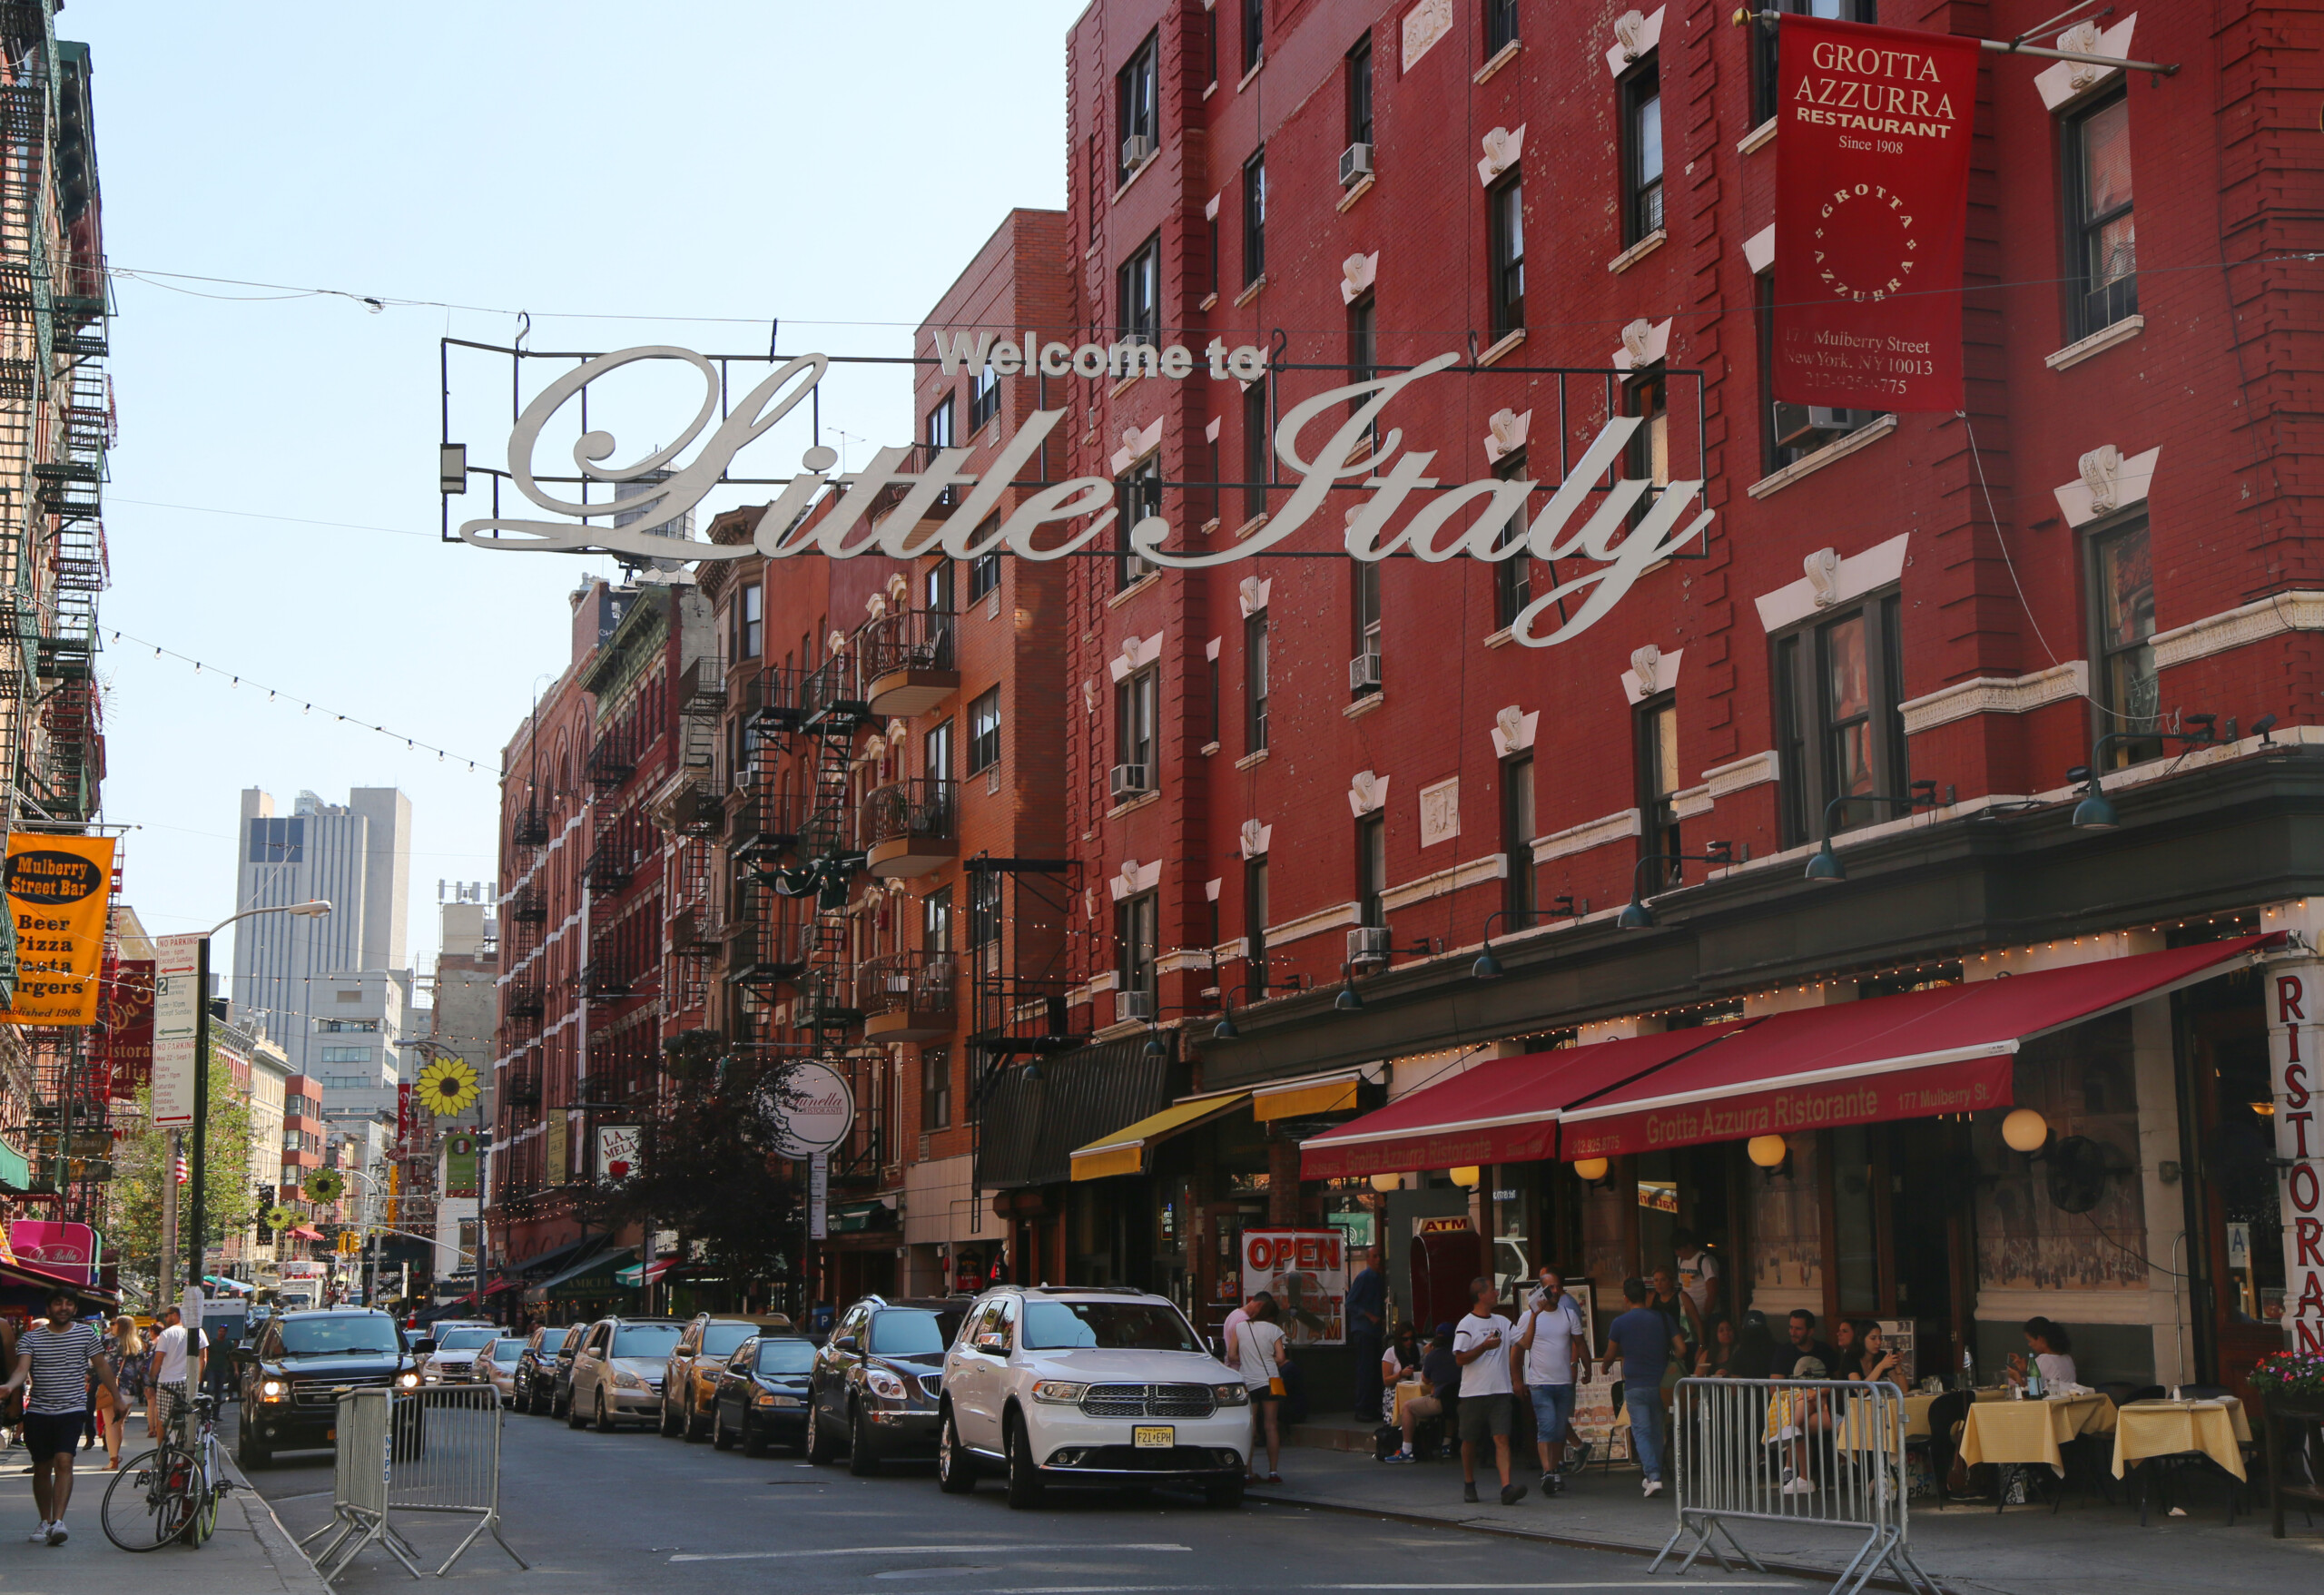 NOWY JORK - Znak "Welcome to Little Italy" na dolnym Manhattanie. Little Italy to włoska społeczność na Manhattanie., licencja: shutterstock/By Leonard Zhukovsky